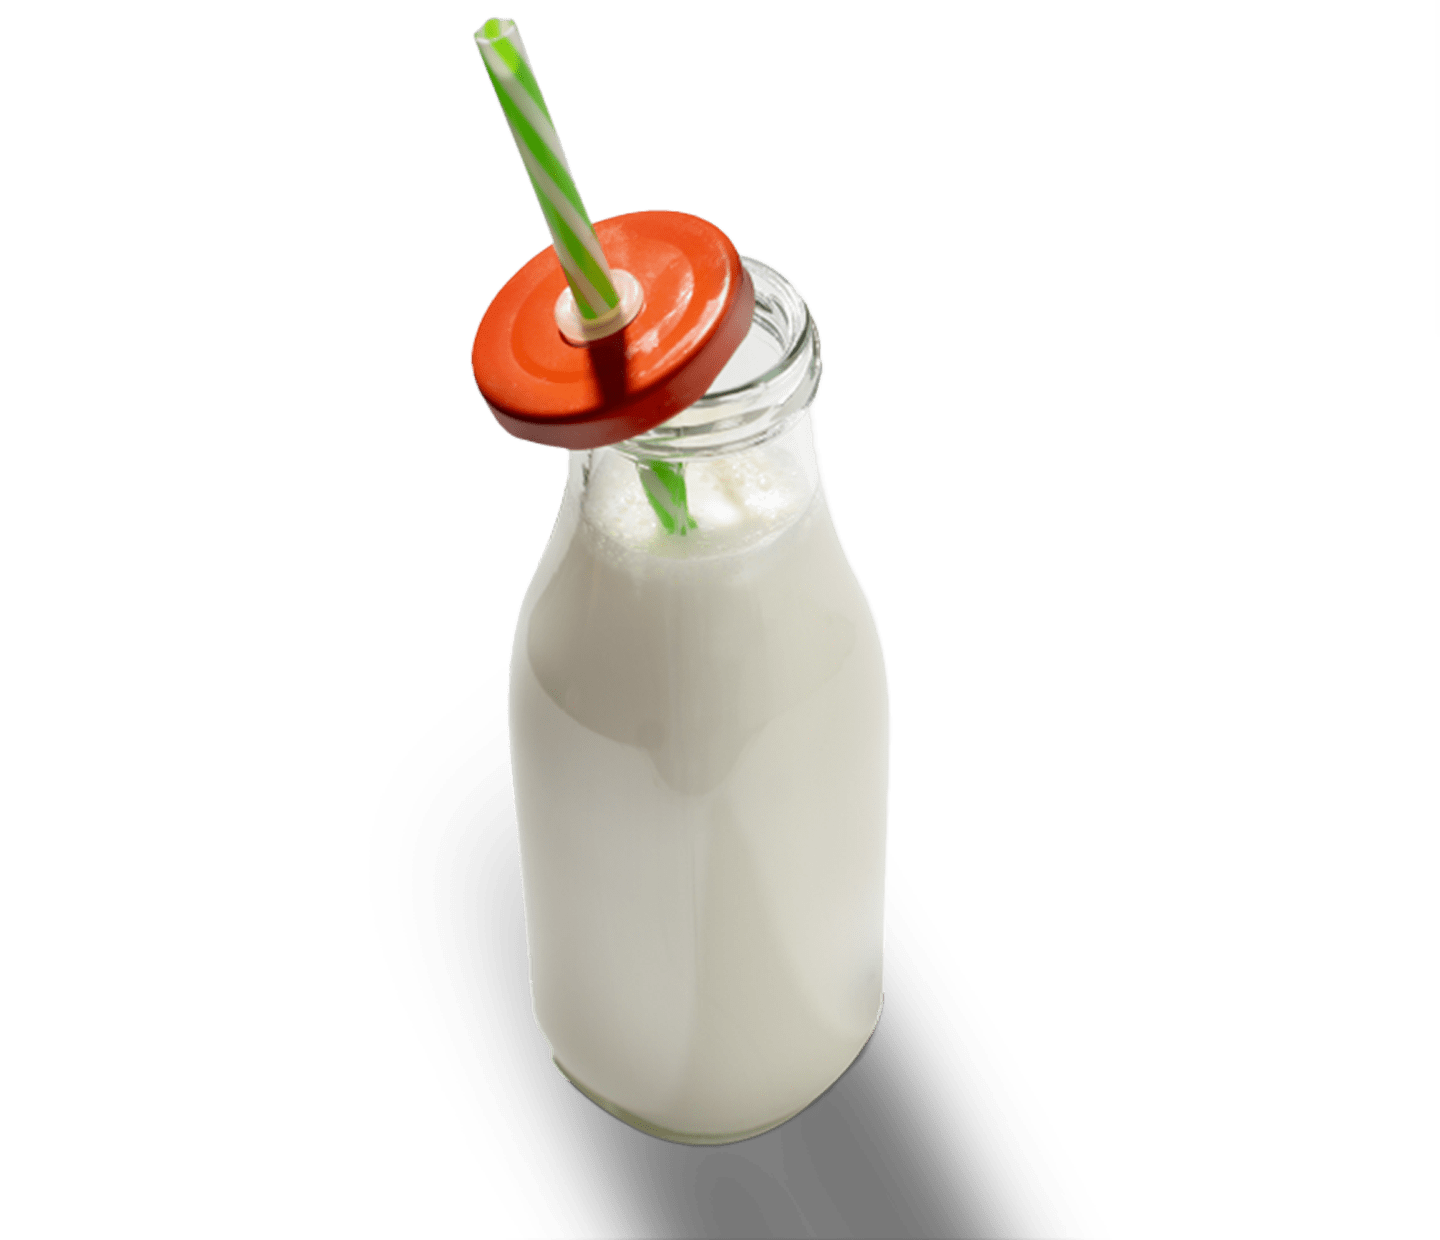 Prova queste 6 alternative senza lattosio